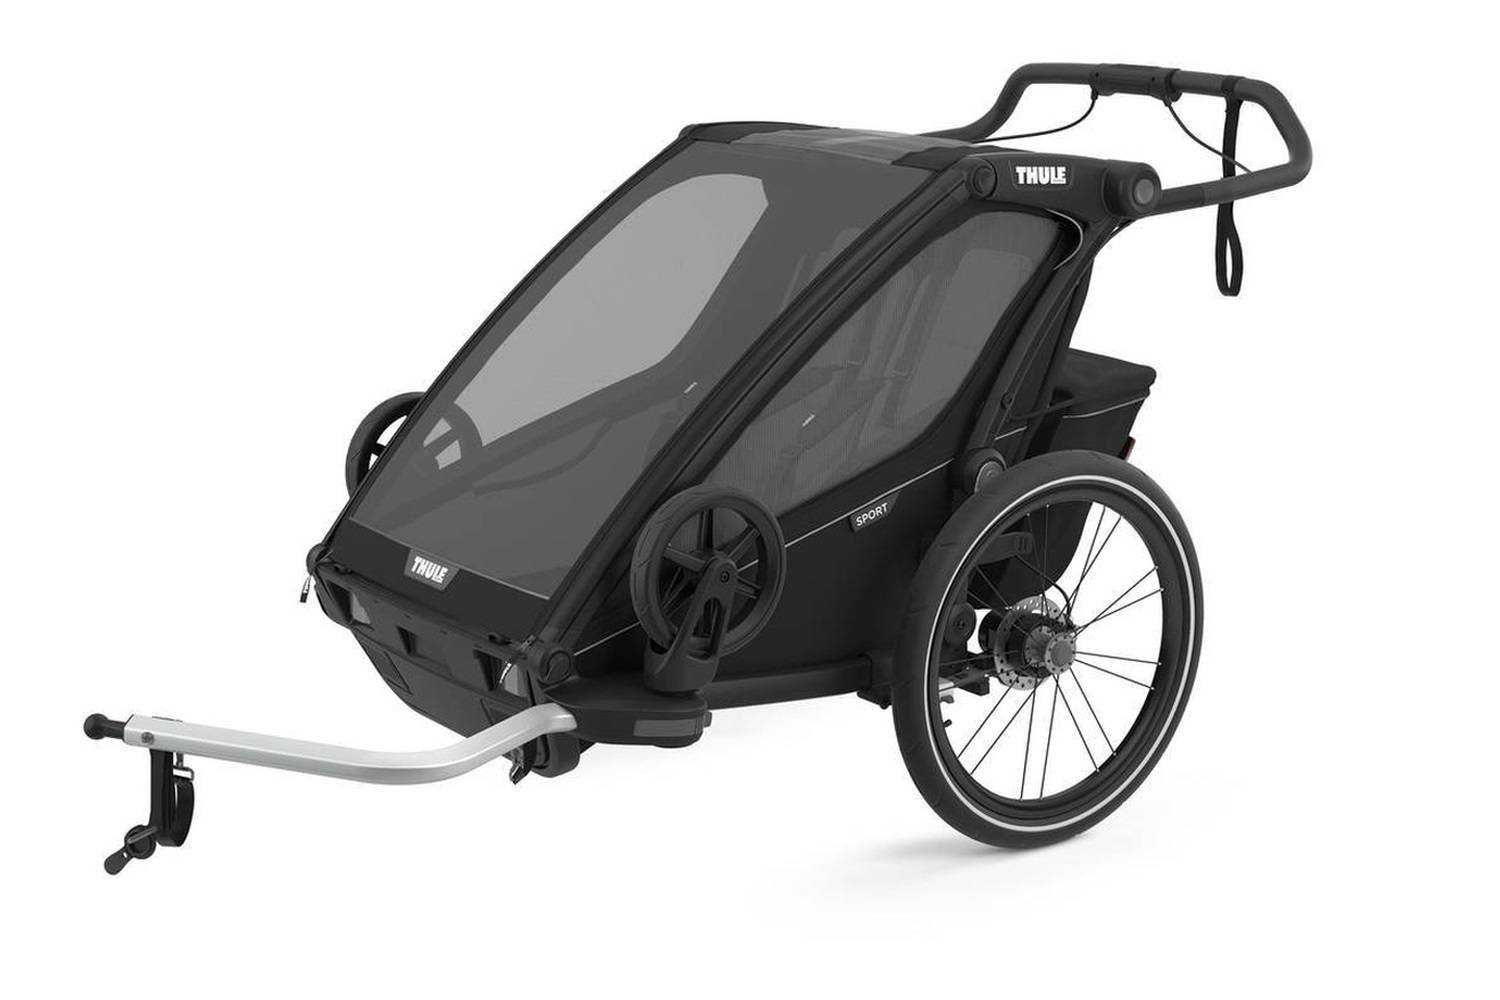 Przyczepka wózek spacerowy Thule Sport 2 dla 2 dzieci W-wa Bemowo